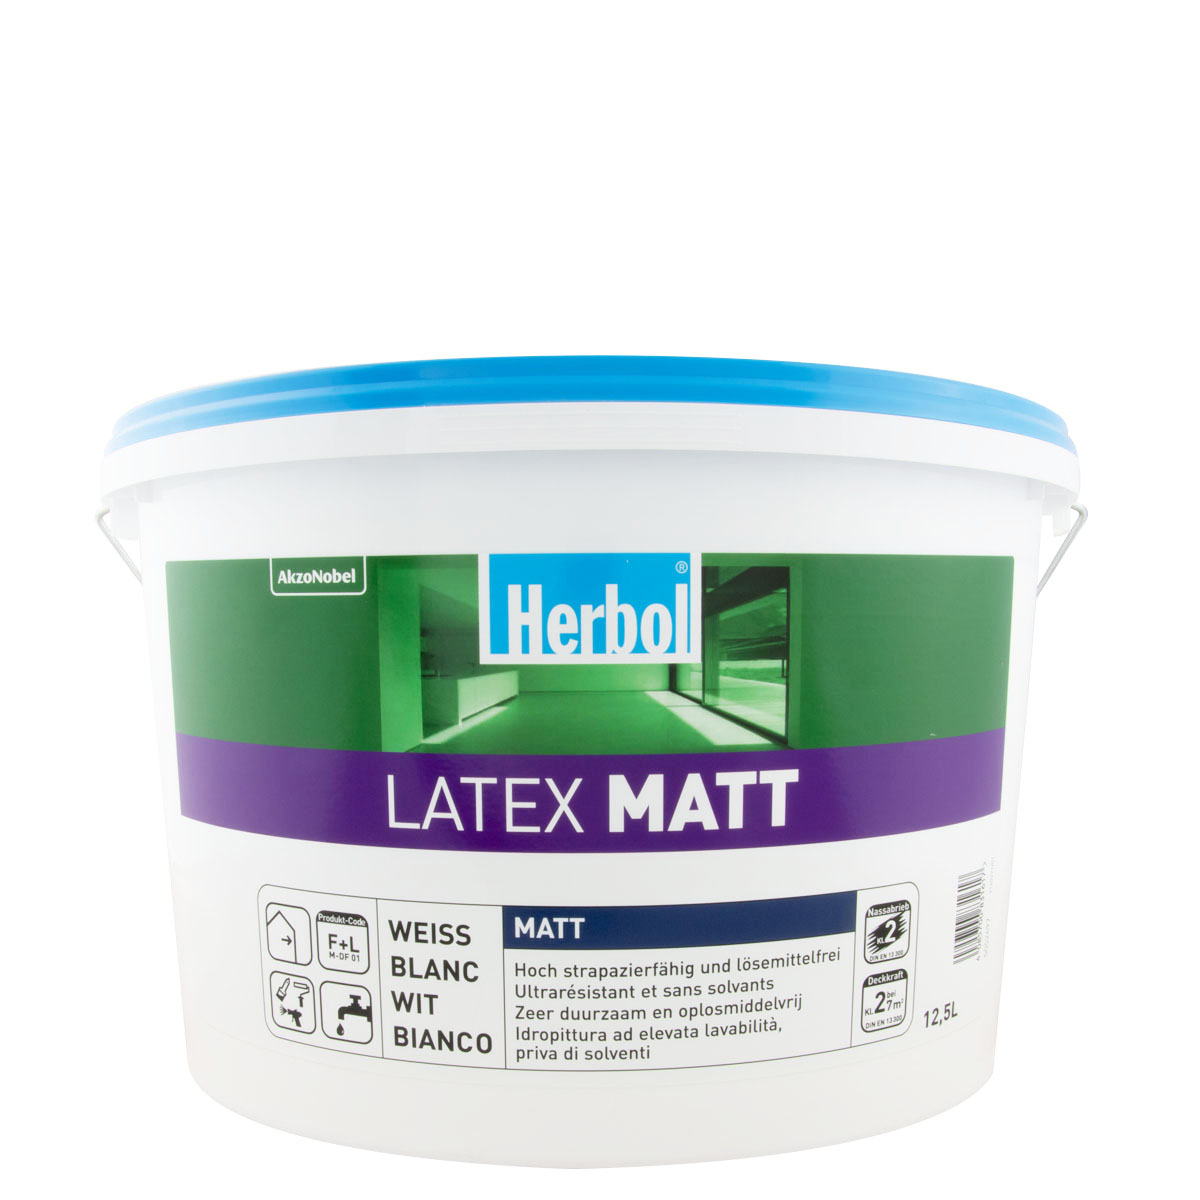 Herbol Latex Matt 12,5L weiss, Latexfarbe